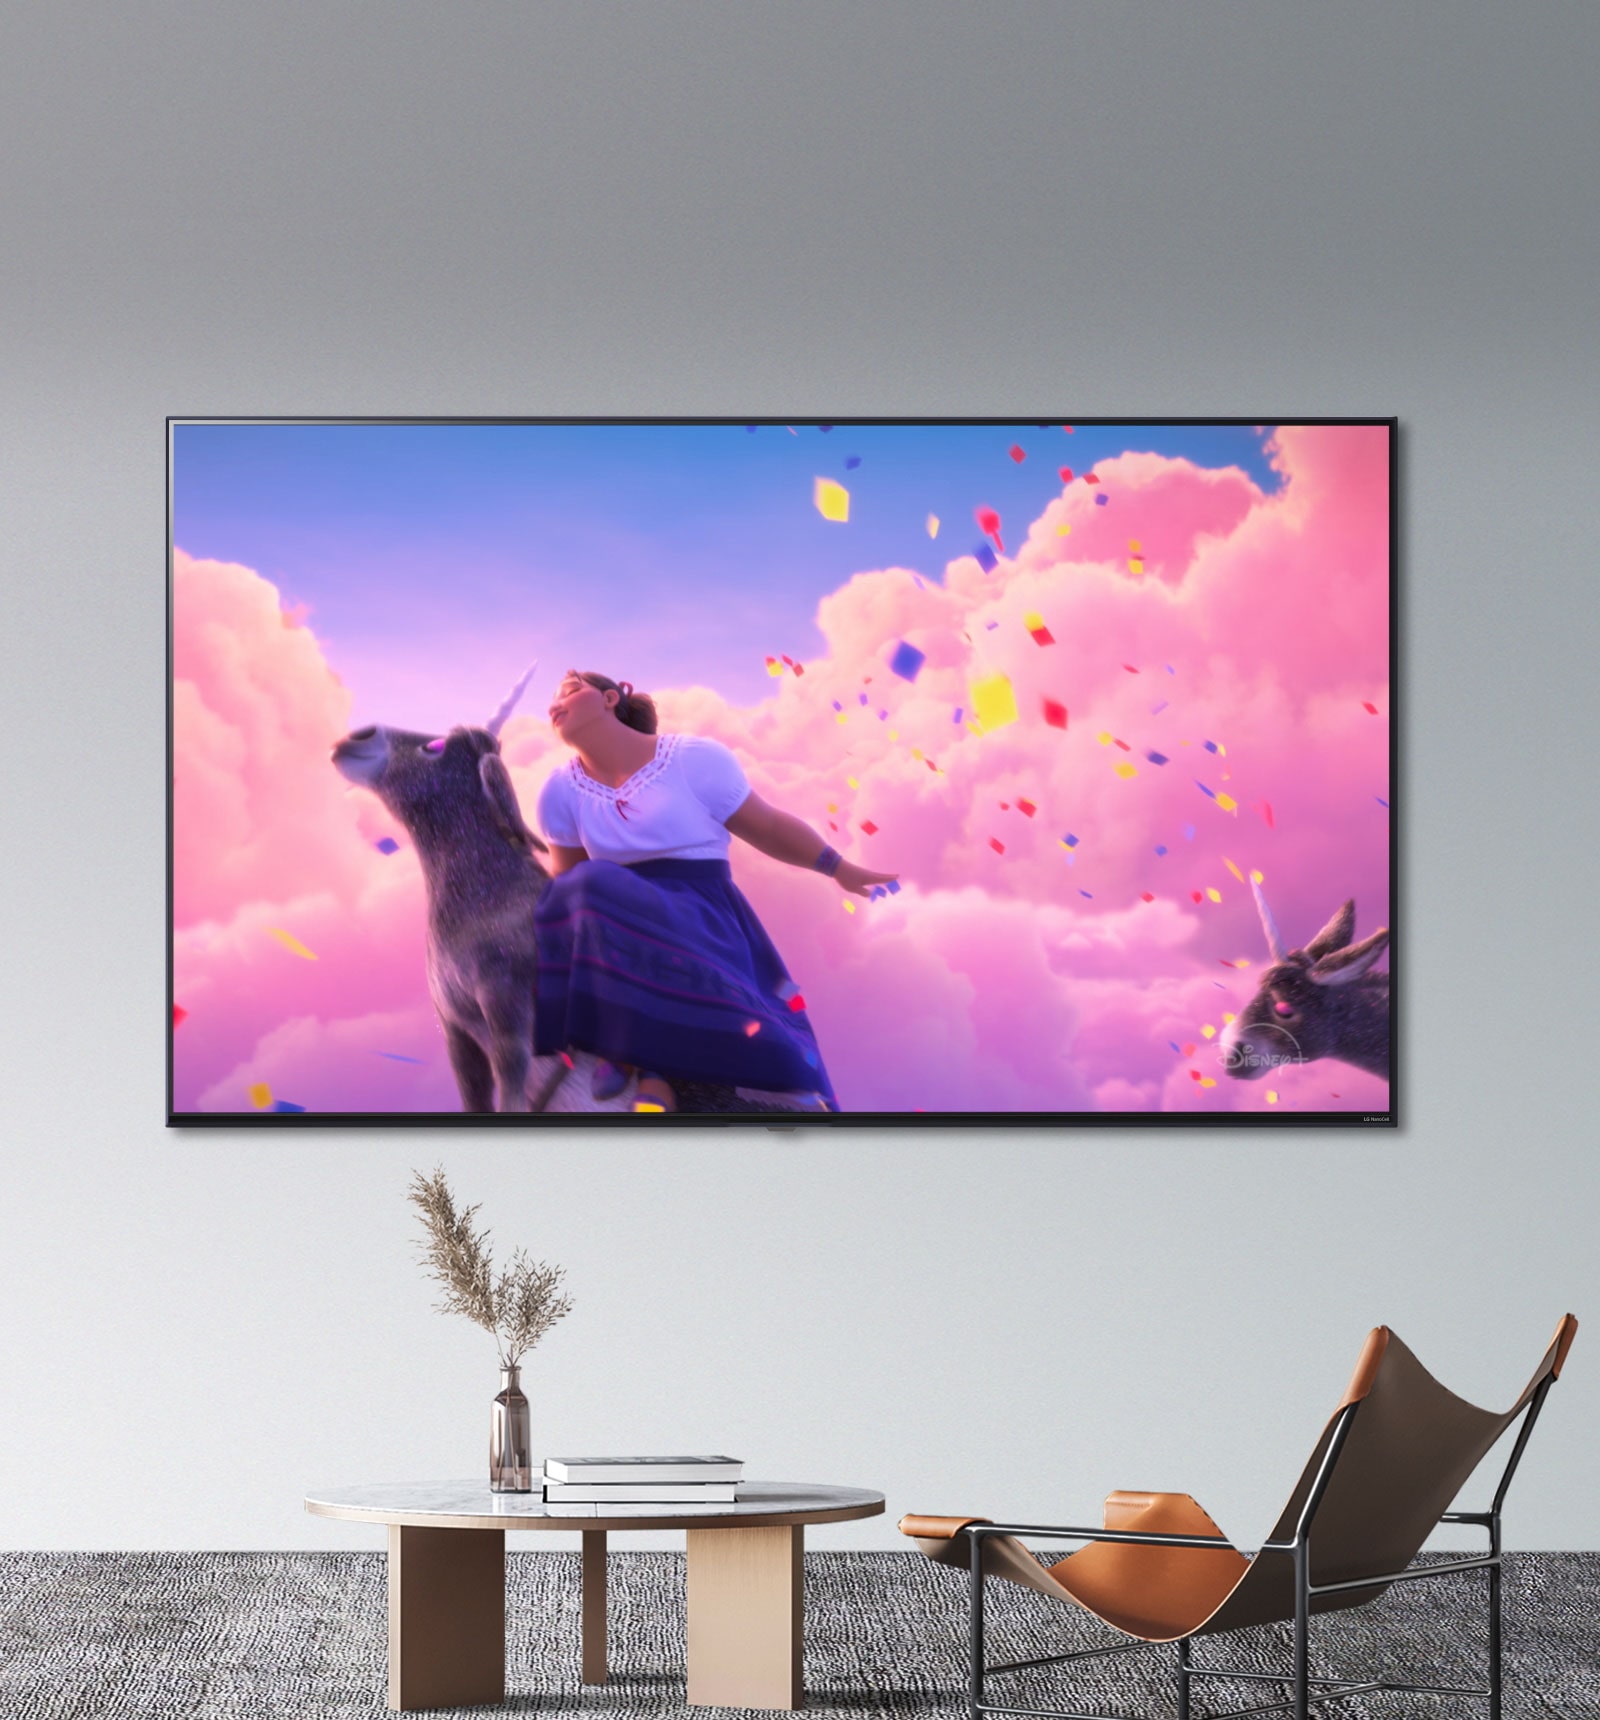 Scene iz Diznijevog animiranog filma „Encanto” prikazuju svetle, živopisne boje na LG NanoCell televizoru.